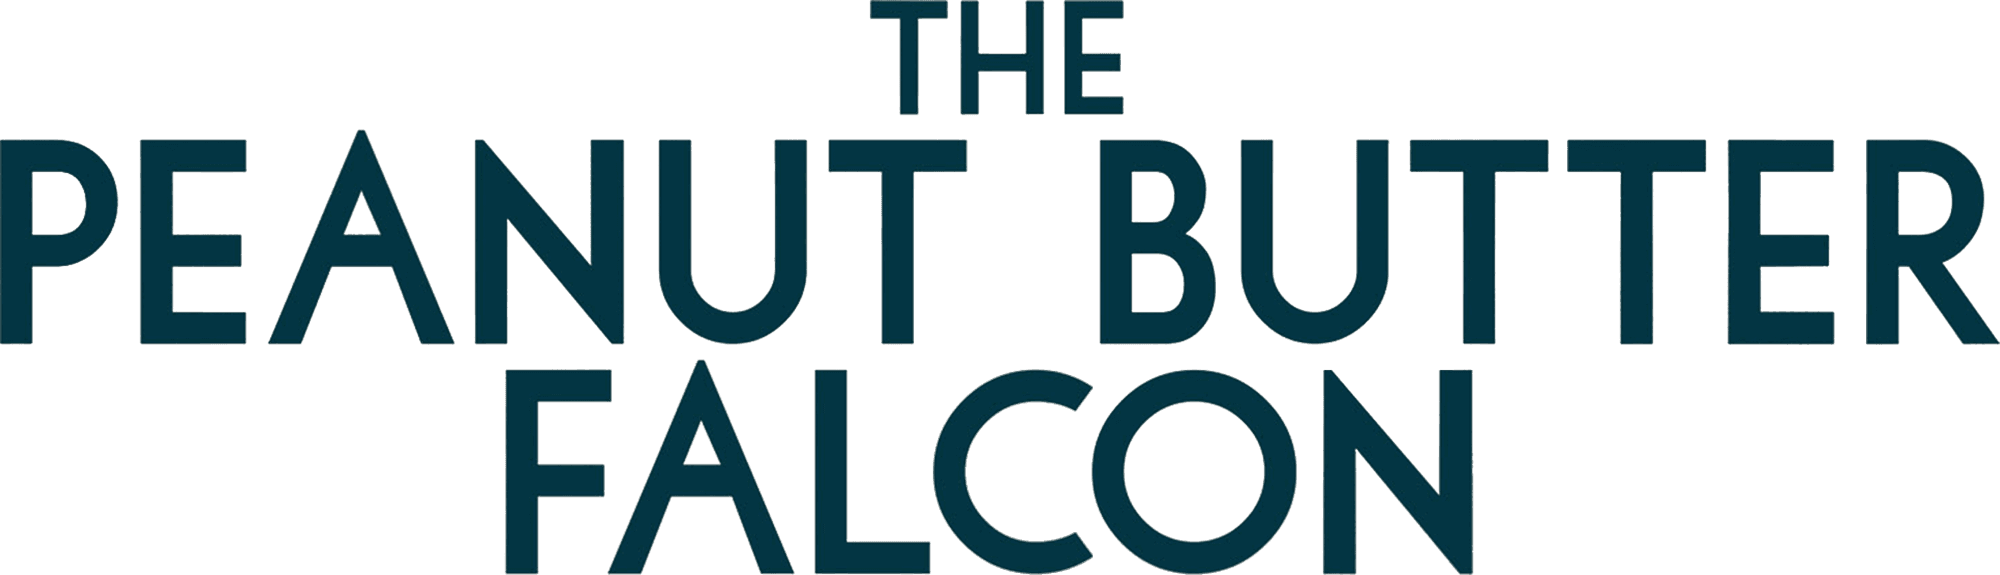 The Peanut Butter Falcon logo